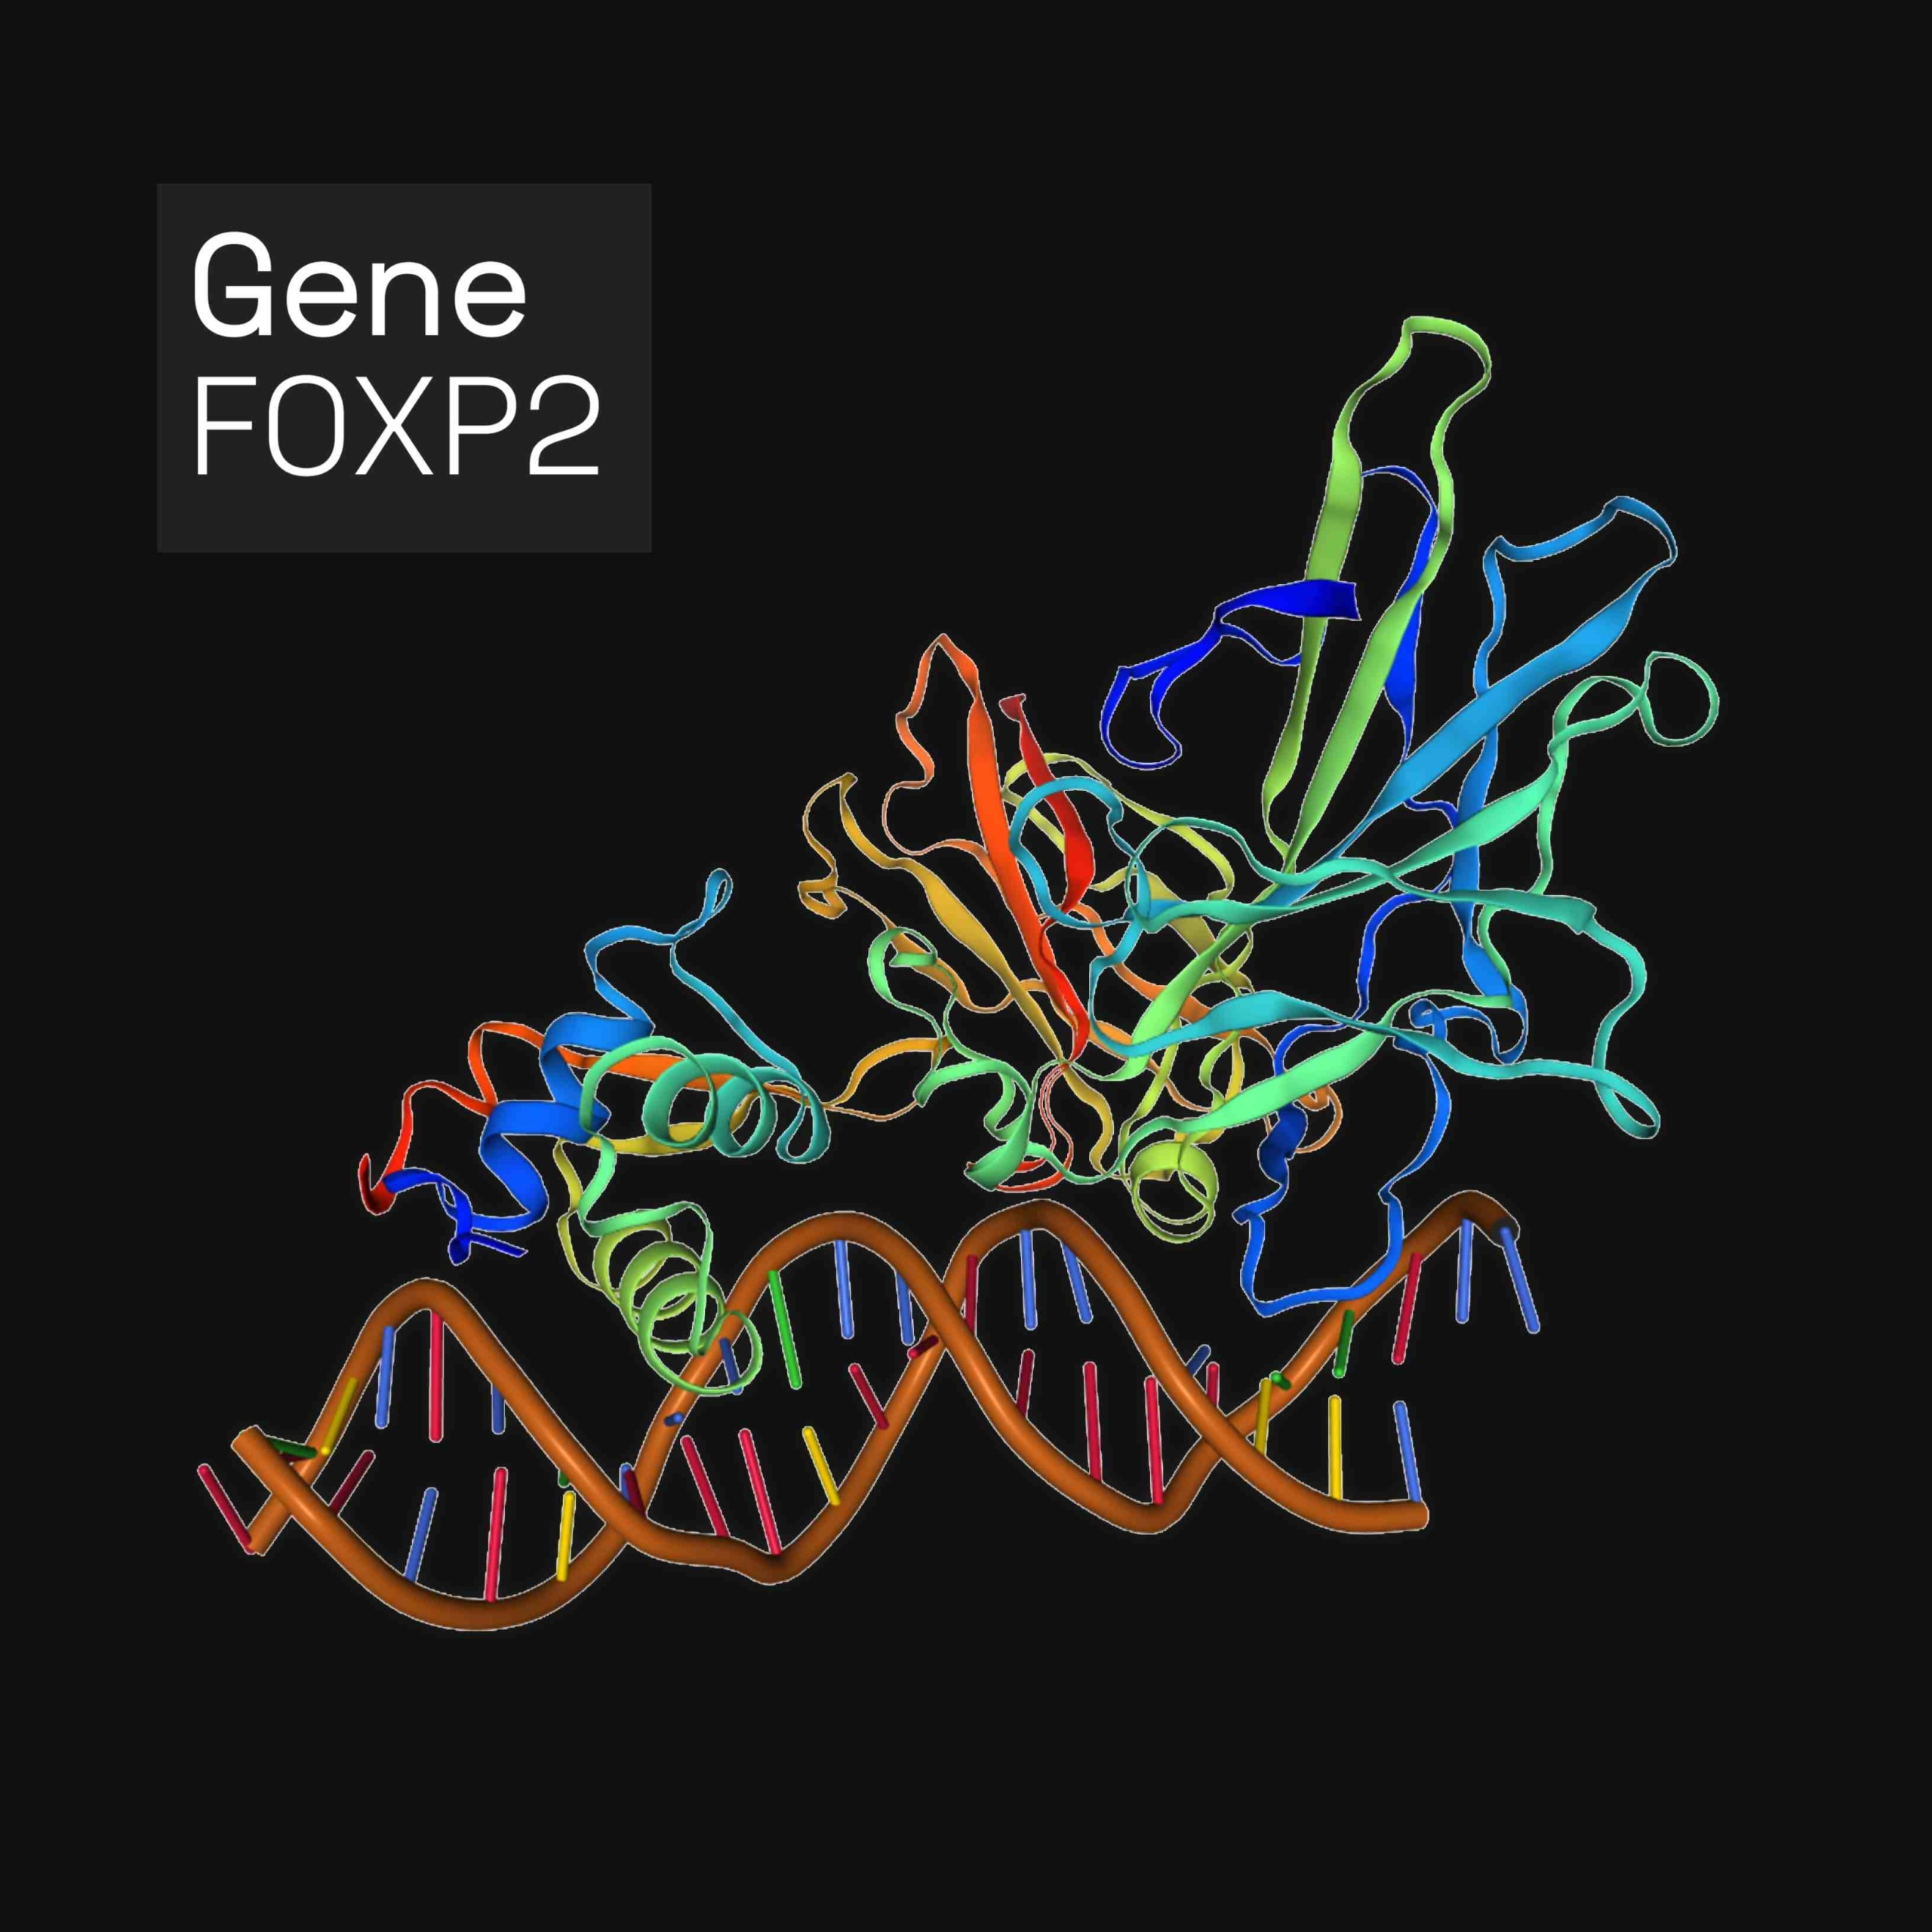 Forkhead box ცილა P2 (FOXP2) არის ცილა, რომელიც ადამიანებში კოდირებულია FOXP2 გენით. FOXP2 არის ტრანსკრიფციული ფაქტორების ოჯახის, ცილები, რომლებიც არეგულირებენ გენის ექსპრესიას დნმ-თან შეკავშირების გზით. იგი გამოხატულია თავის ტვინში, გულში, ფილტვებში და საჭმლის მომნელებელ სისტემაში.